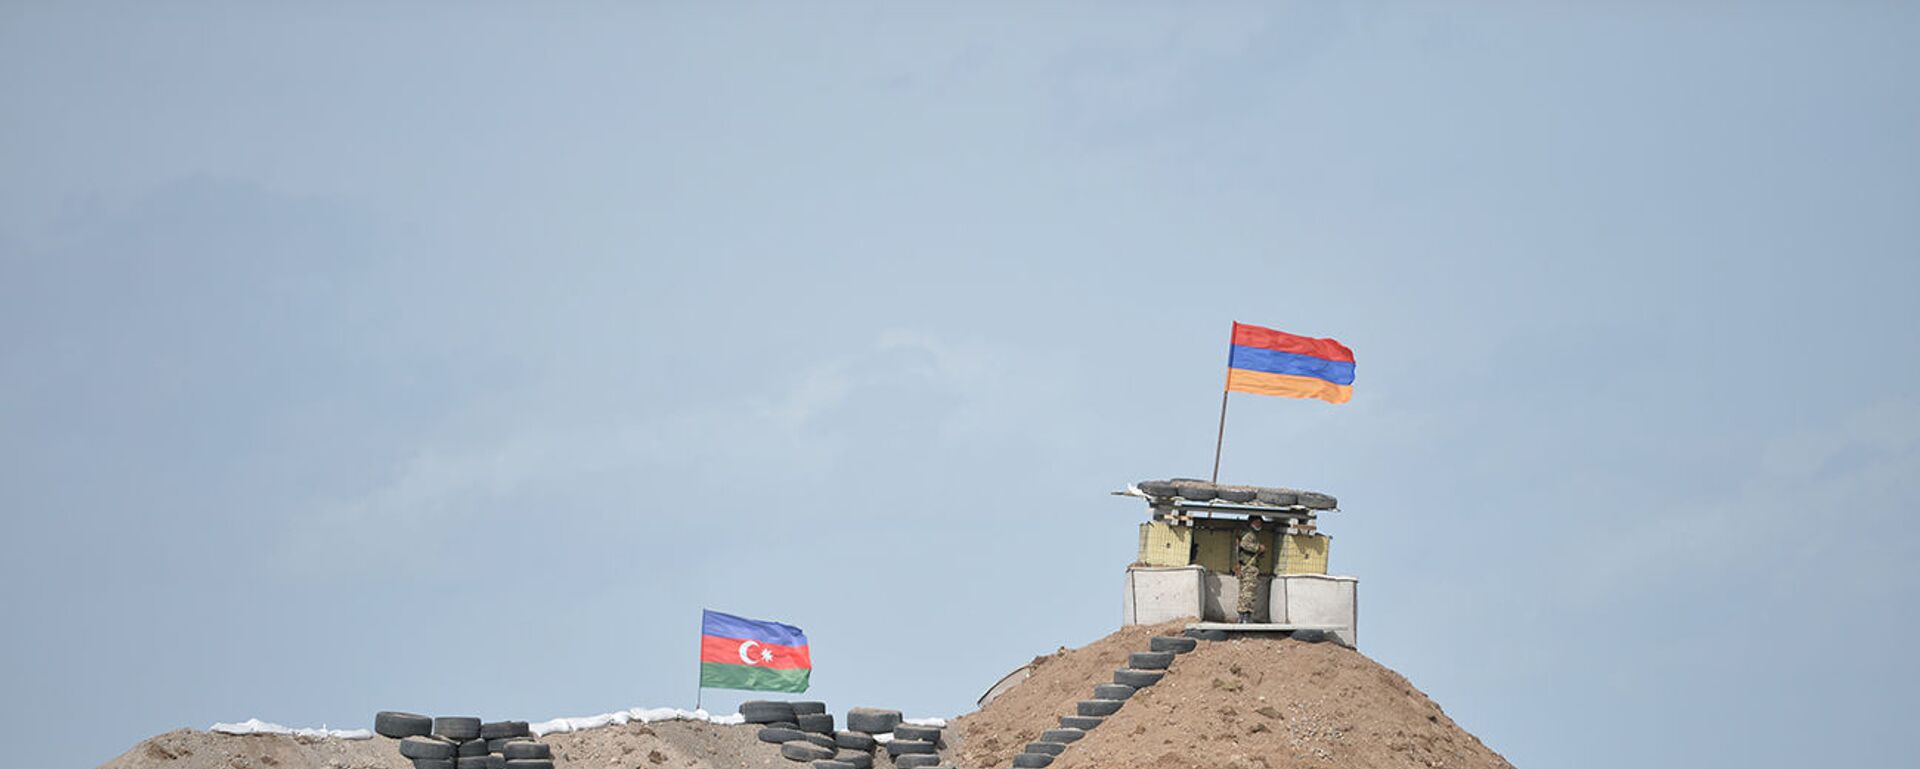 Военные посты на армянсо-азербайджанской границе - Sputnik Армения, 1920, 14.05.2021